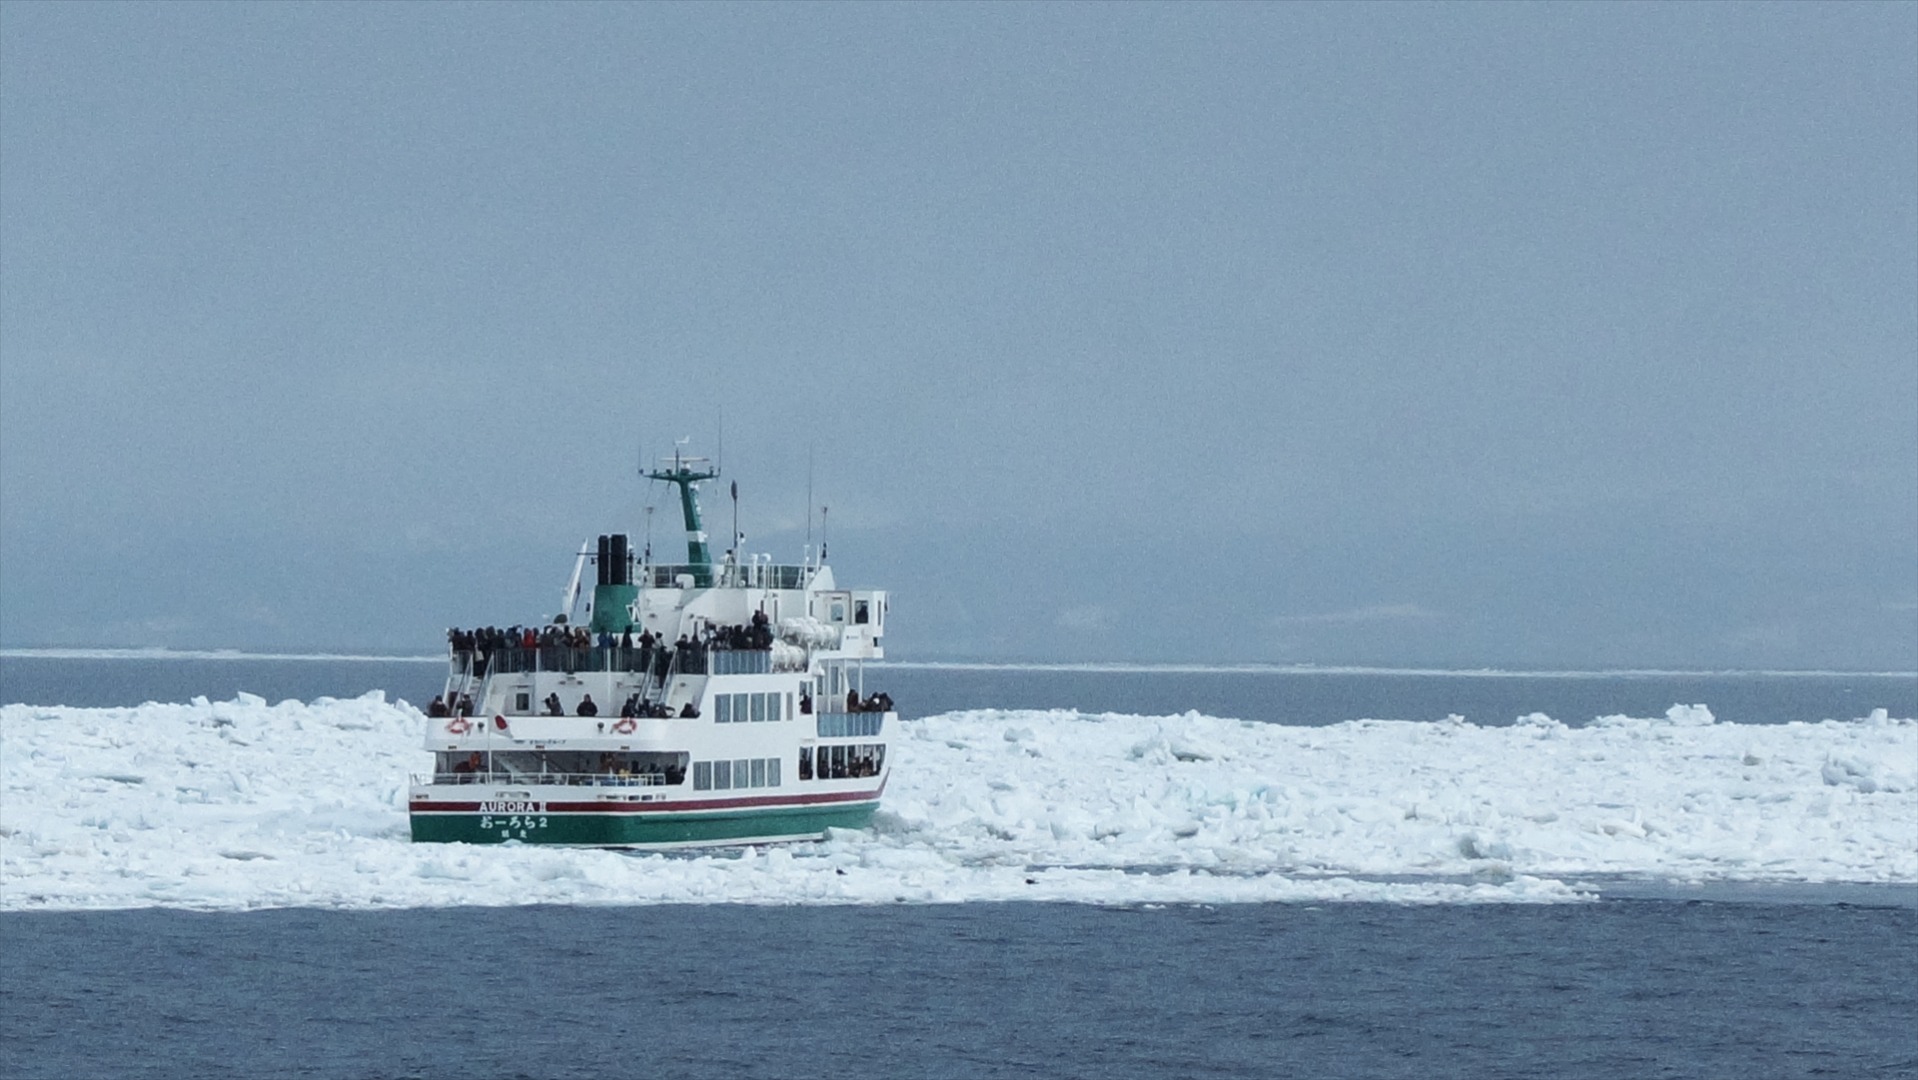 เรือตัดน้ำแข็งออโรร่า (観光船オーロラ号)